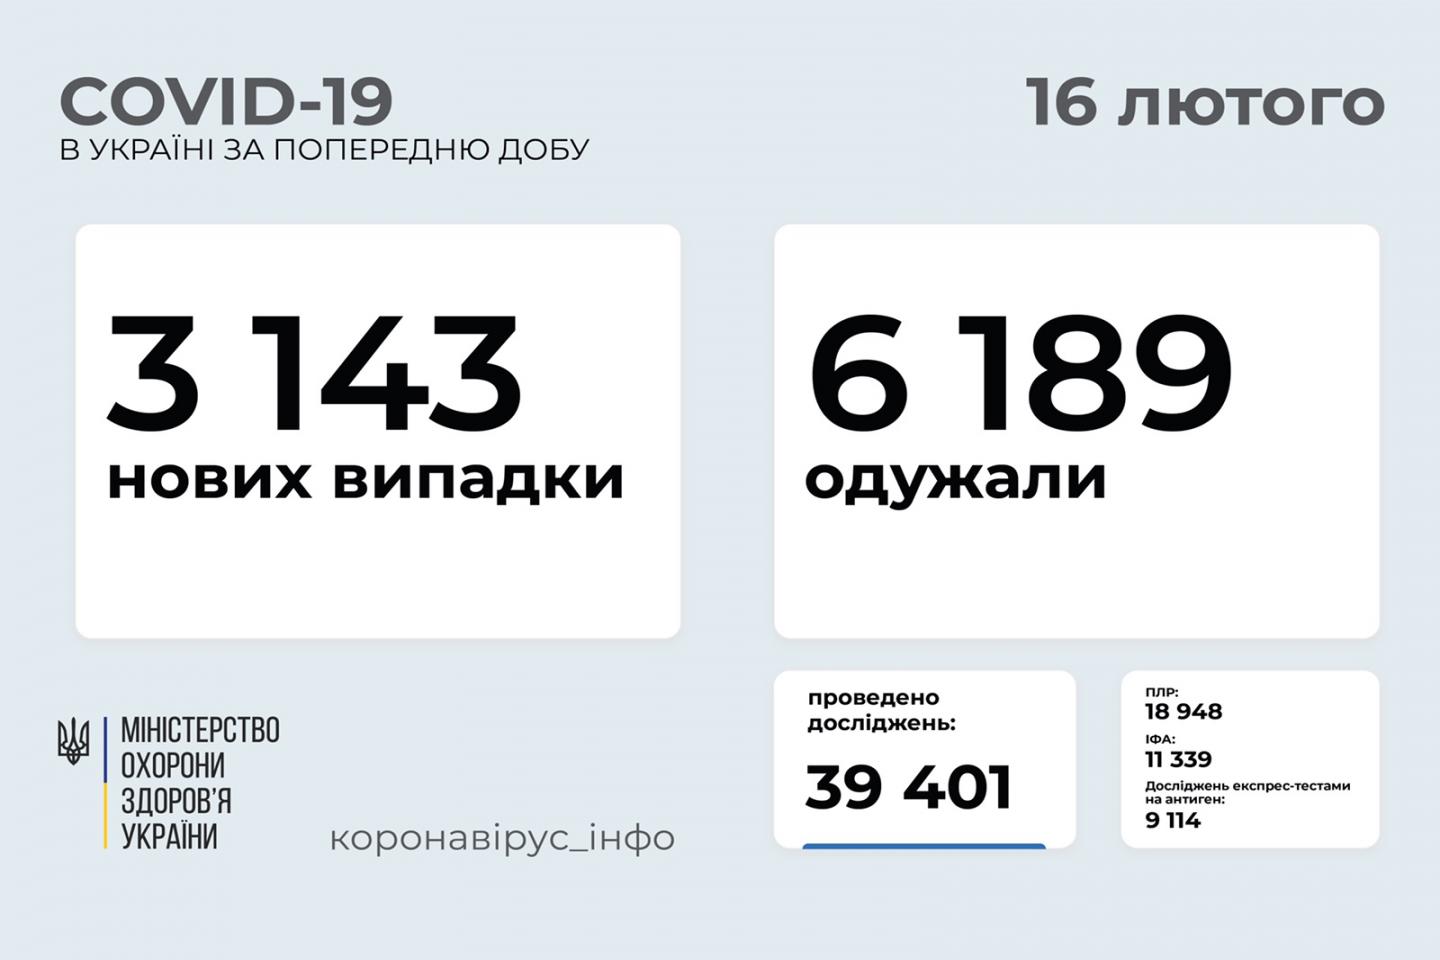 http://dunrada.gov.ua/uploadfile/archive_news/2021/02/16/2021-02-16_6445/images/images-73599.jpg